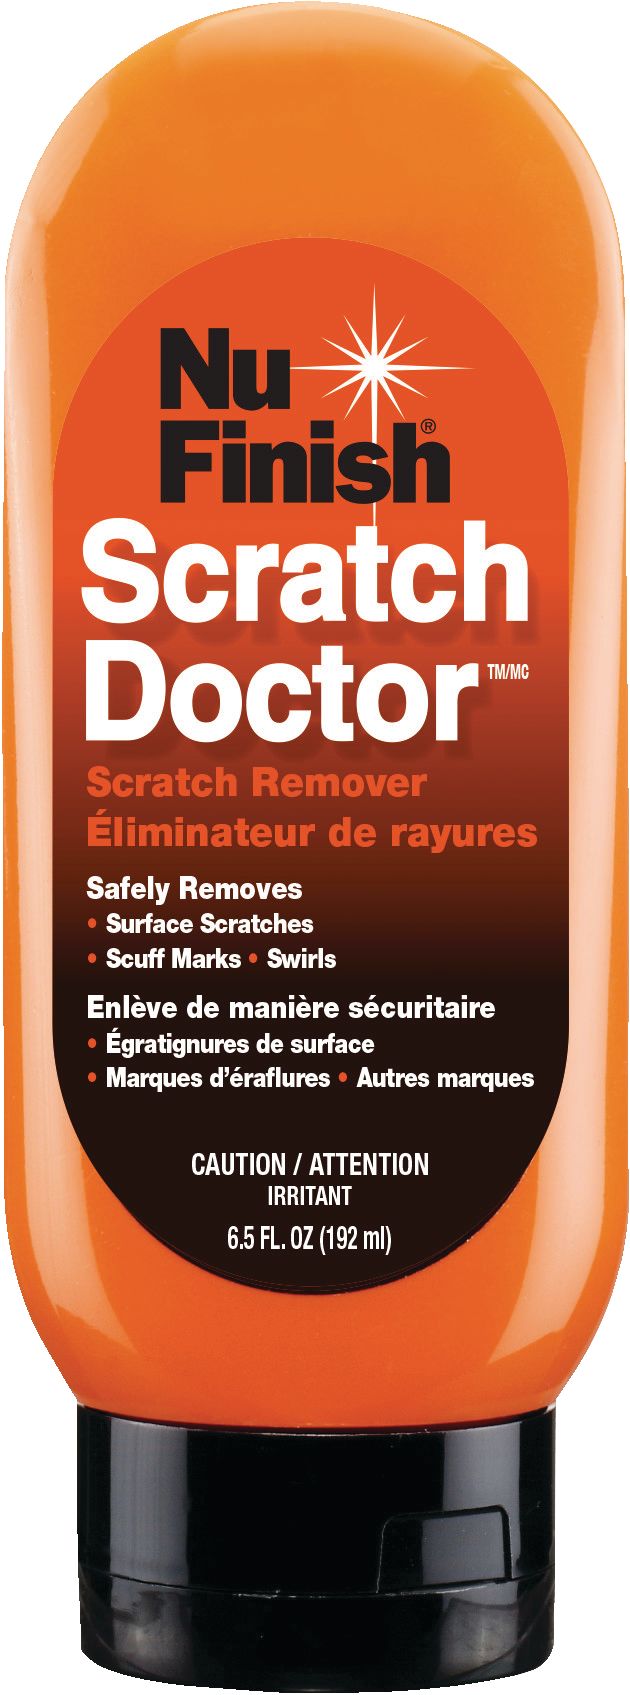 Nu Finish Scratch Doctor Car Scratch Remover, 192-mL